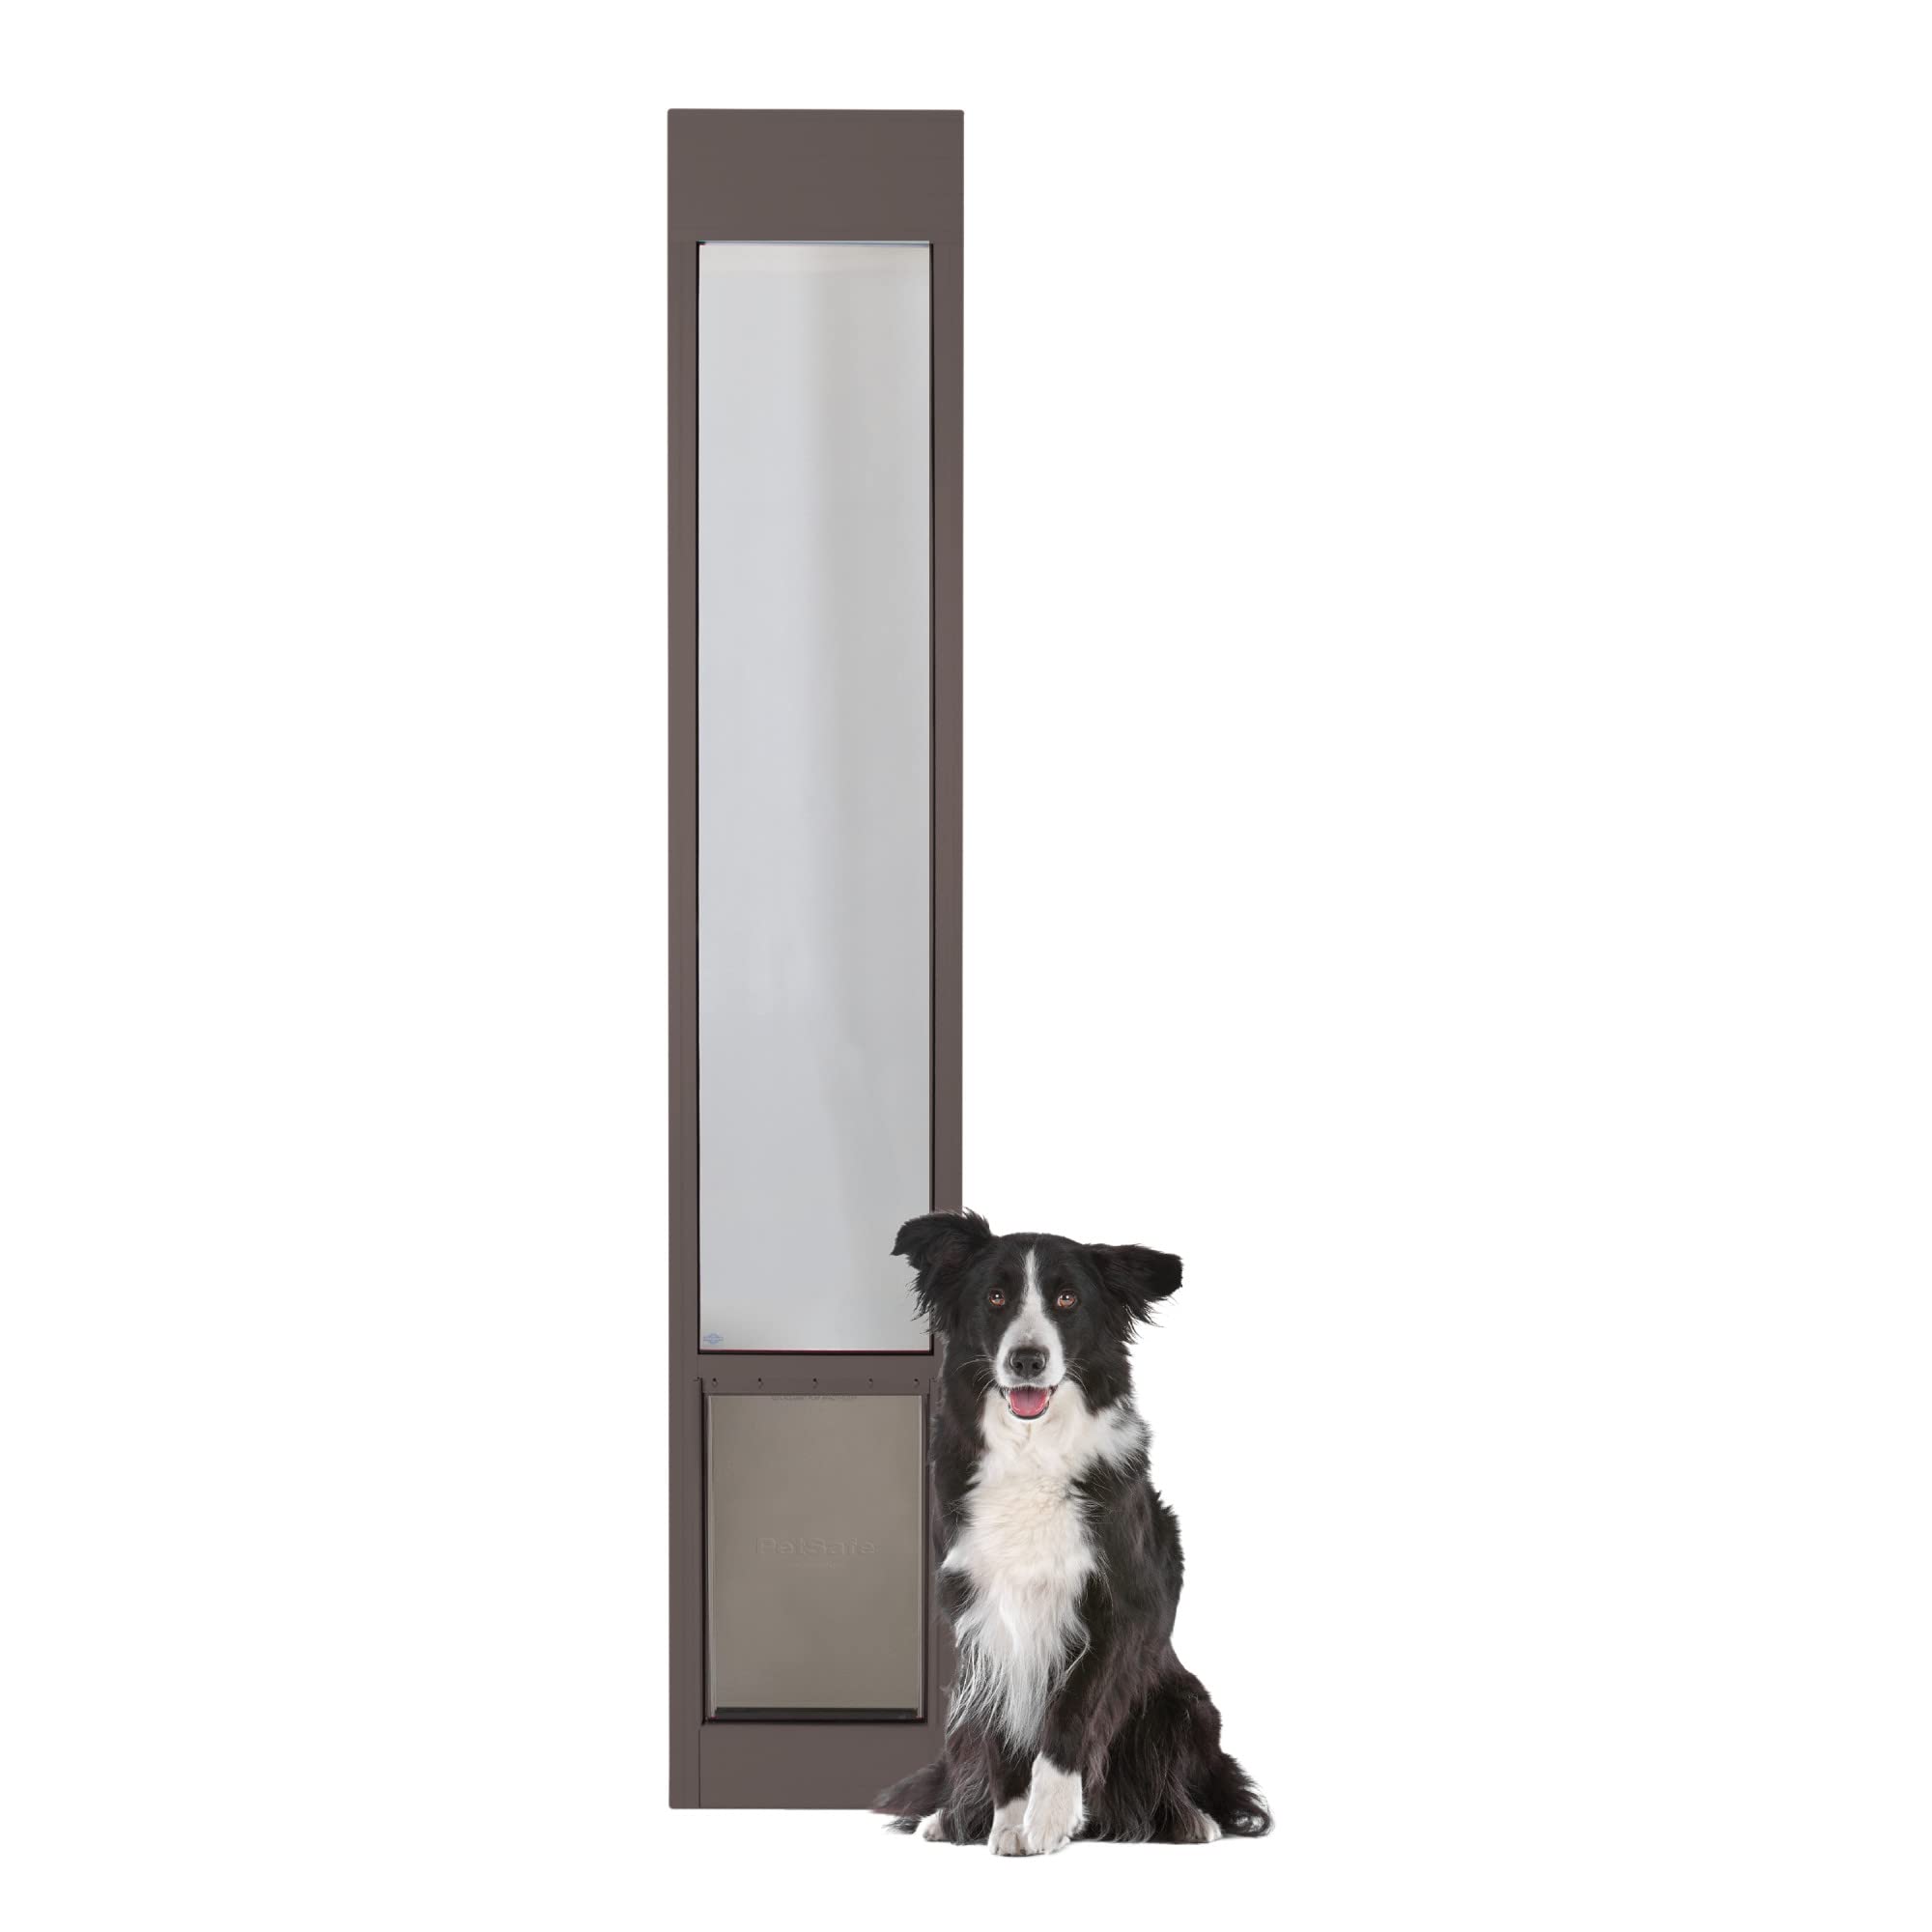 PetSafe 1 件式滑动玻璃宠物门 - 适用于狗和猫的户外通道露台面板插件，易于免切割安装，耐候铝插件，包括滑入式安全关闭面板